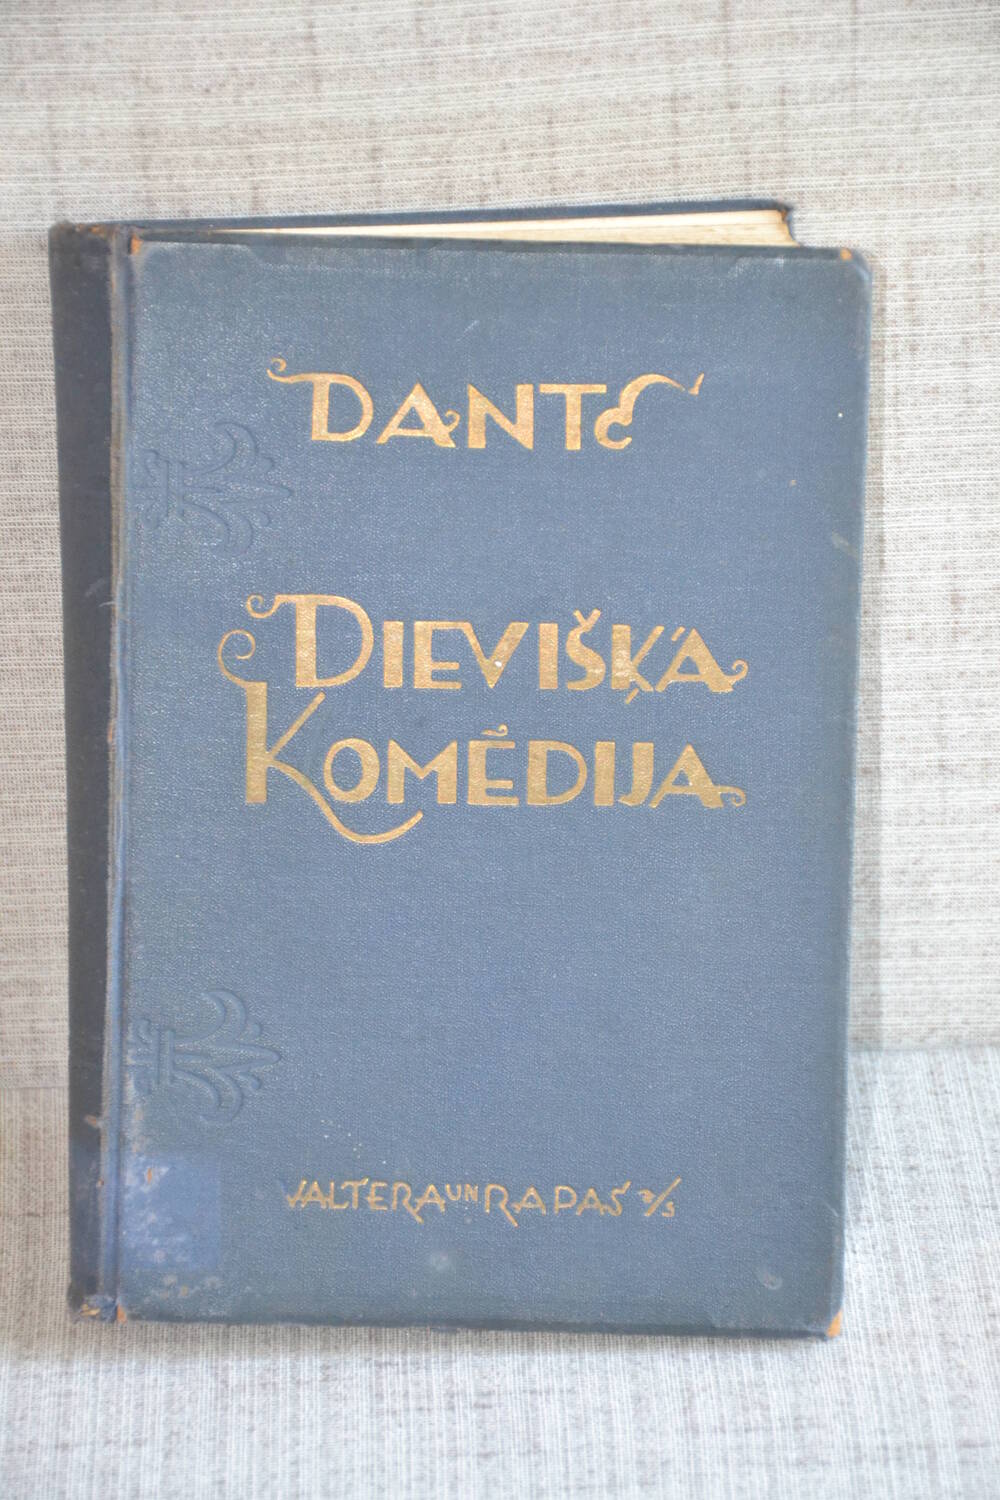 Книга Dante «Dieviska komedija» (Божественная комедия» c иллюстрациями.  498 стр.